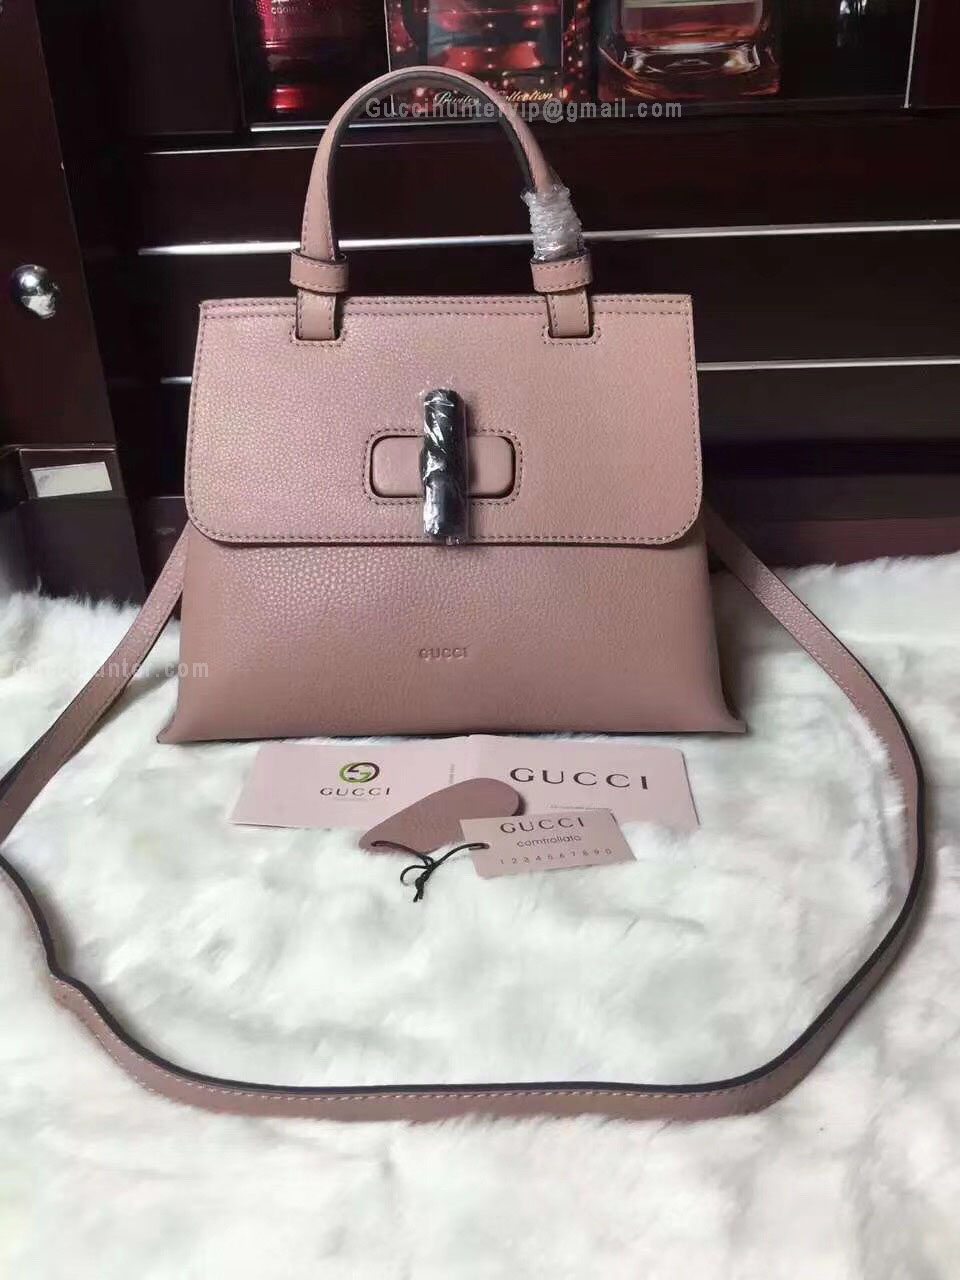 Gucci Bamboo Large Top Handle Daily Handbag Pink 370830